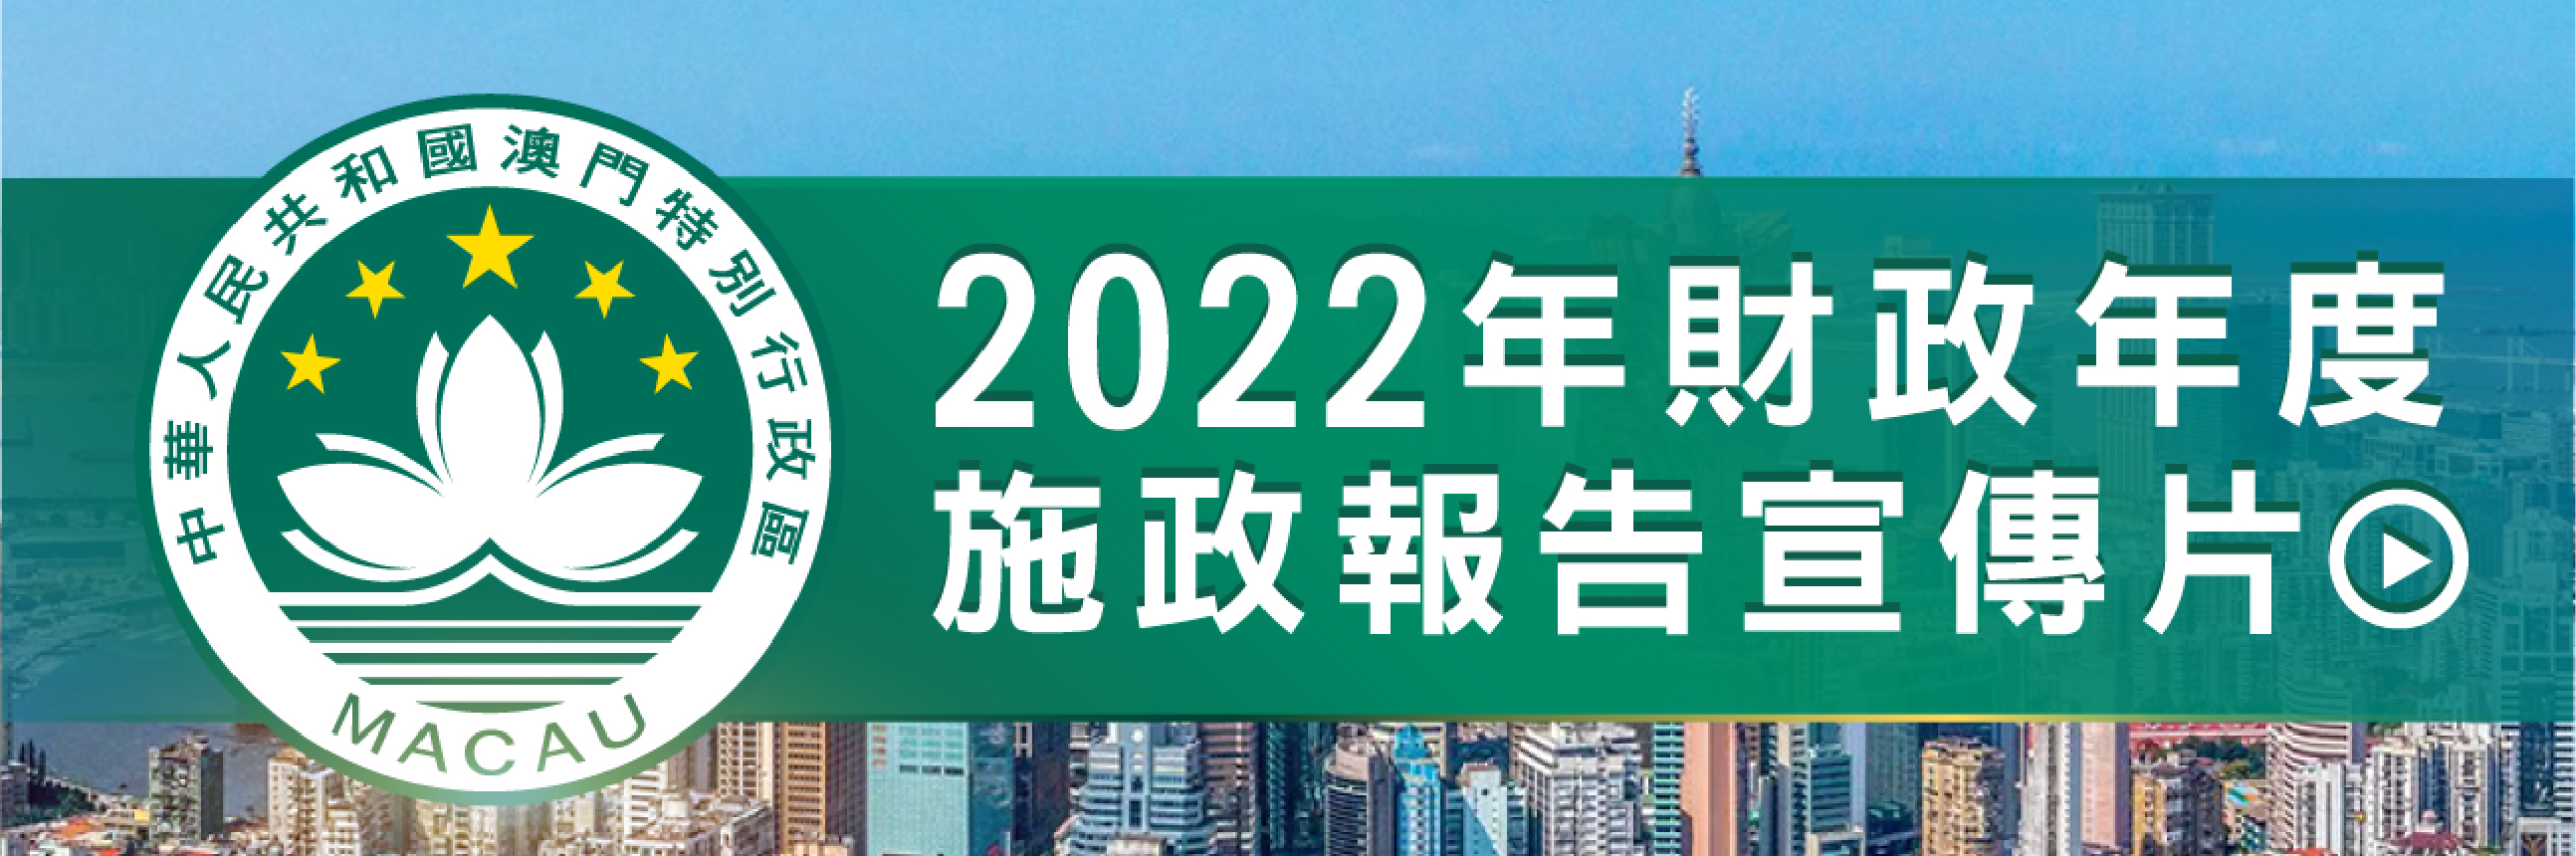 2022年财政年度施政报告宣传片